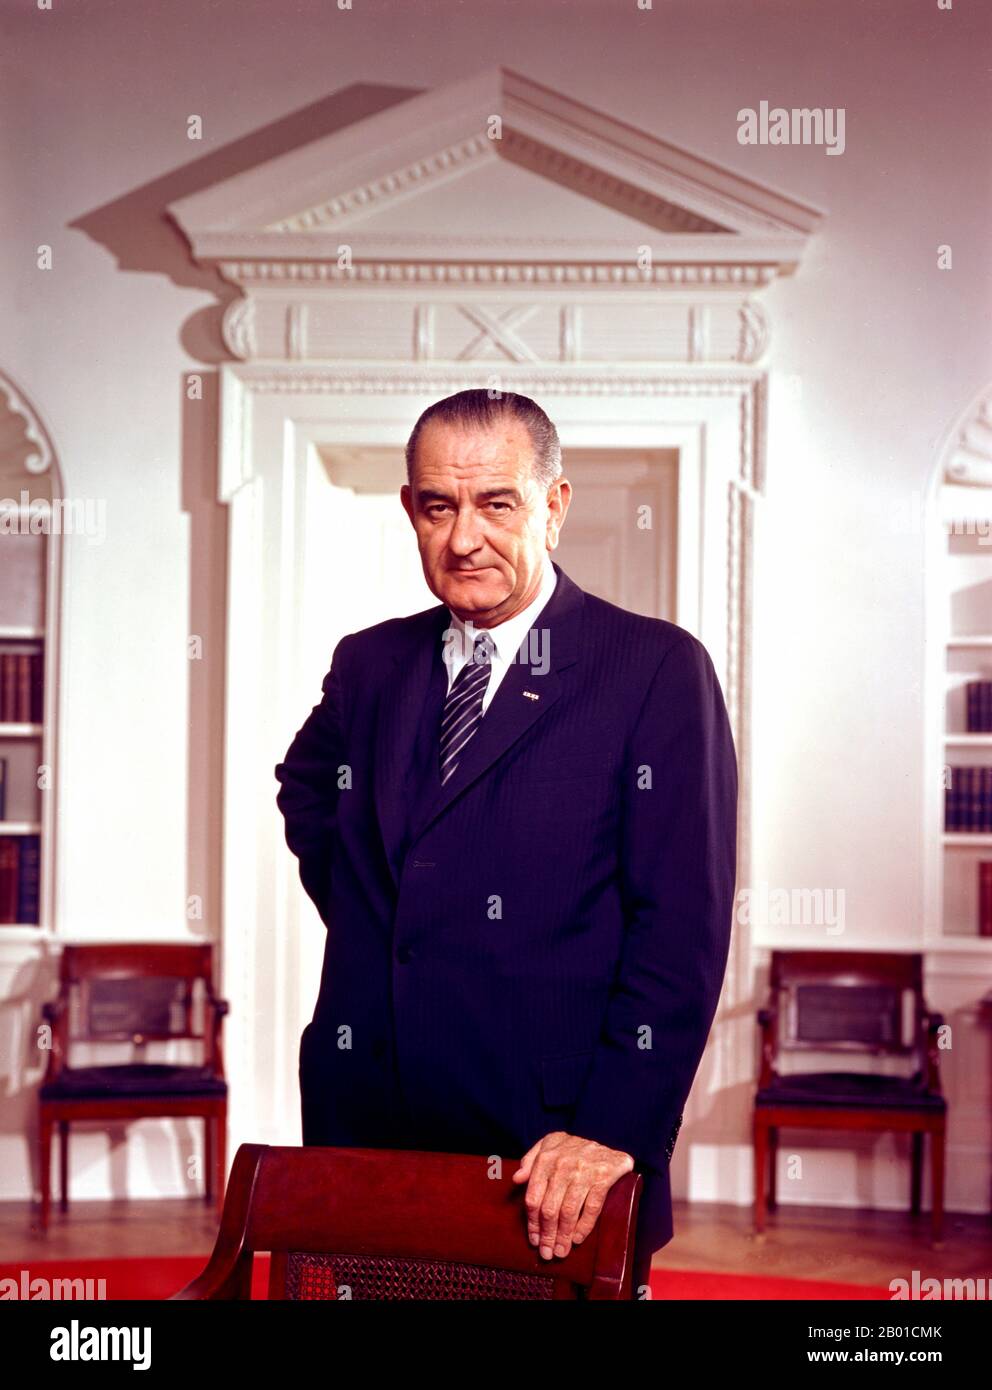 États-Unis : Lyndon Baines Johnson (27 août 1908 - 22 janvier 1973), 36th Président des États-Unis (1963-1969). Photo d'Arnold Newman (1918-2006, domaine public), Bureau ovale, Maison Blanche, 10 mars 1964. Lyndon Baines Johnson, souvent appelé LBJ, a été le président des États-Unis en 36th après avoir été le vice-président des États-Unis en 37th (1961-1963). Il est l'une des quatre personnes qui ont servi dans les quatre bureaux fédéraux élus des États-Unis : représentant, sénateur, vice-président et président. Banque D'Images